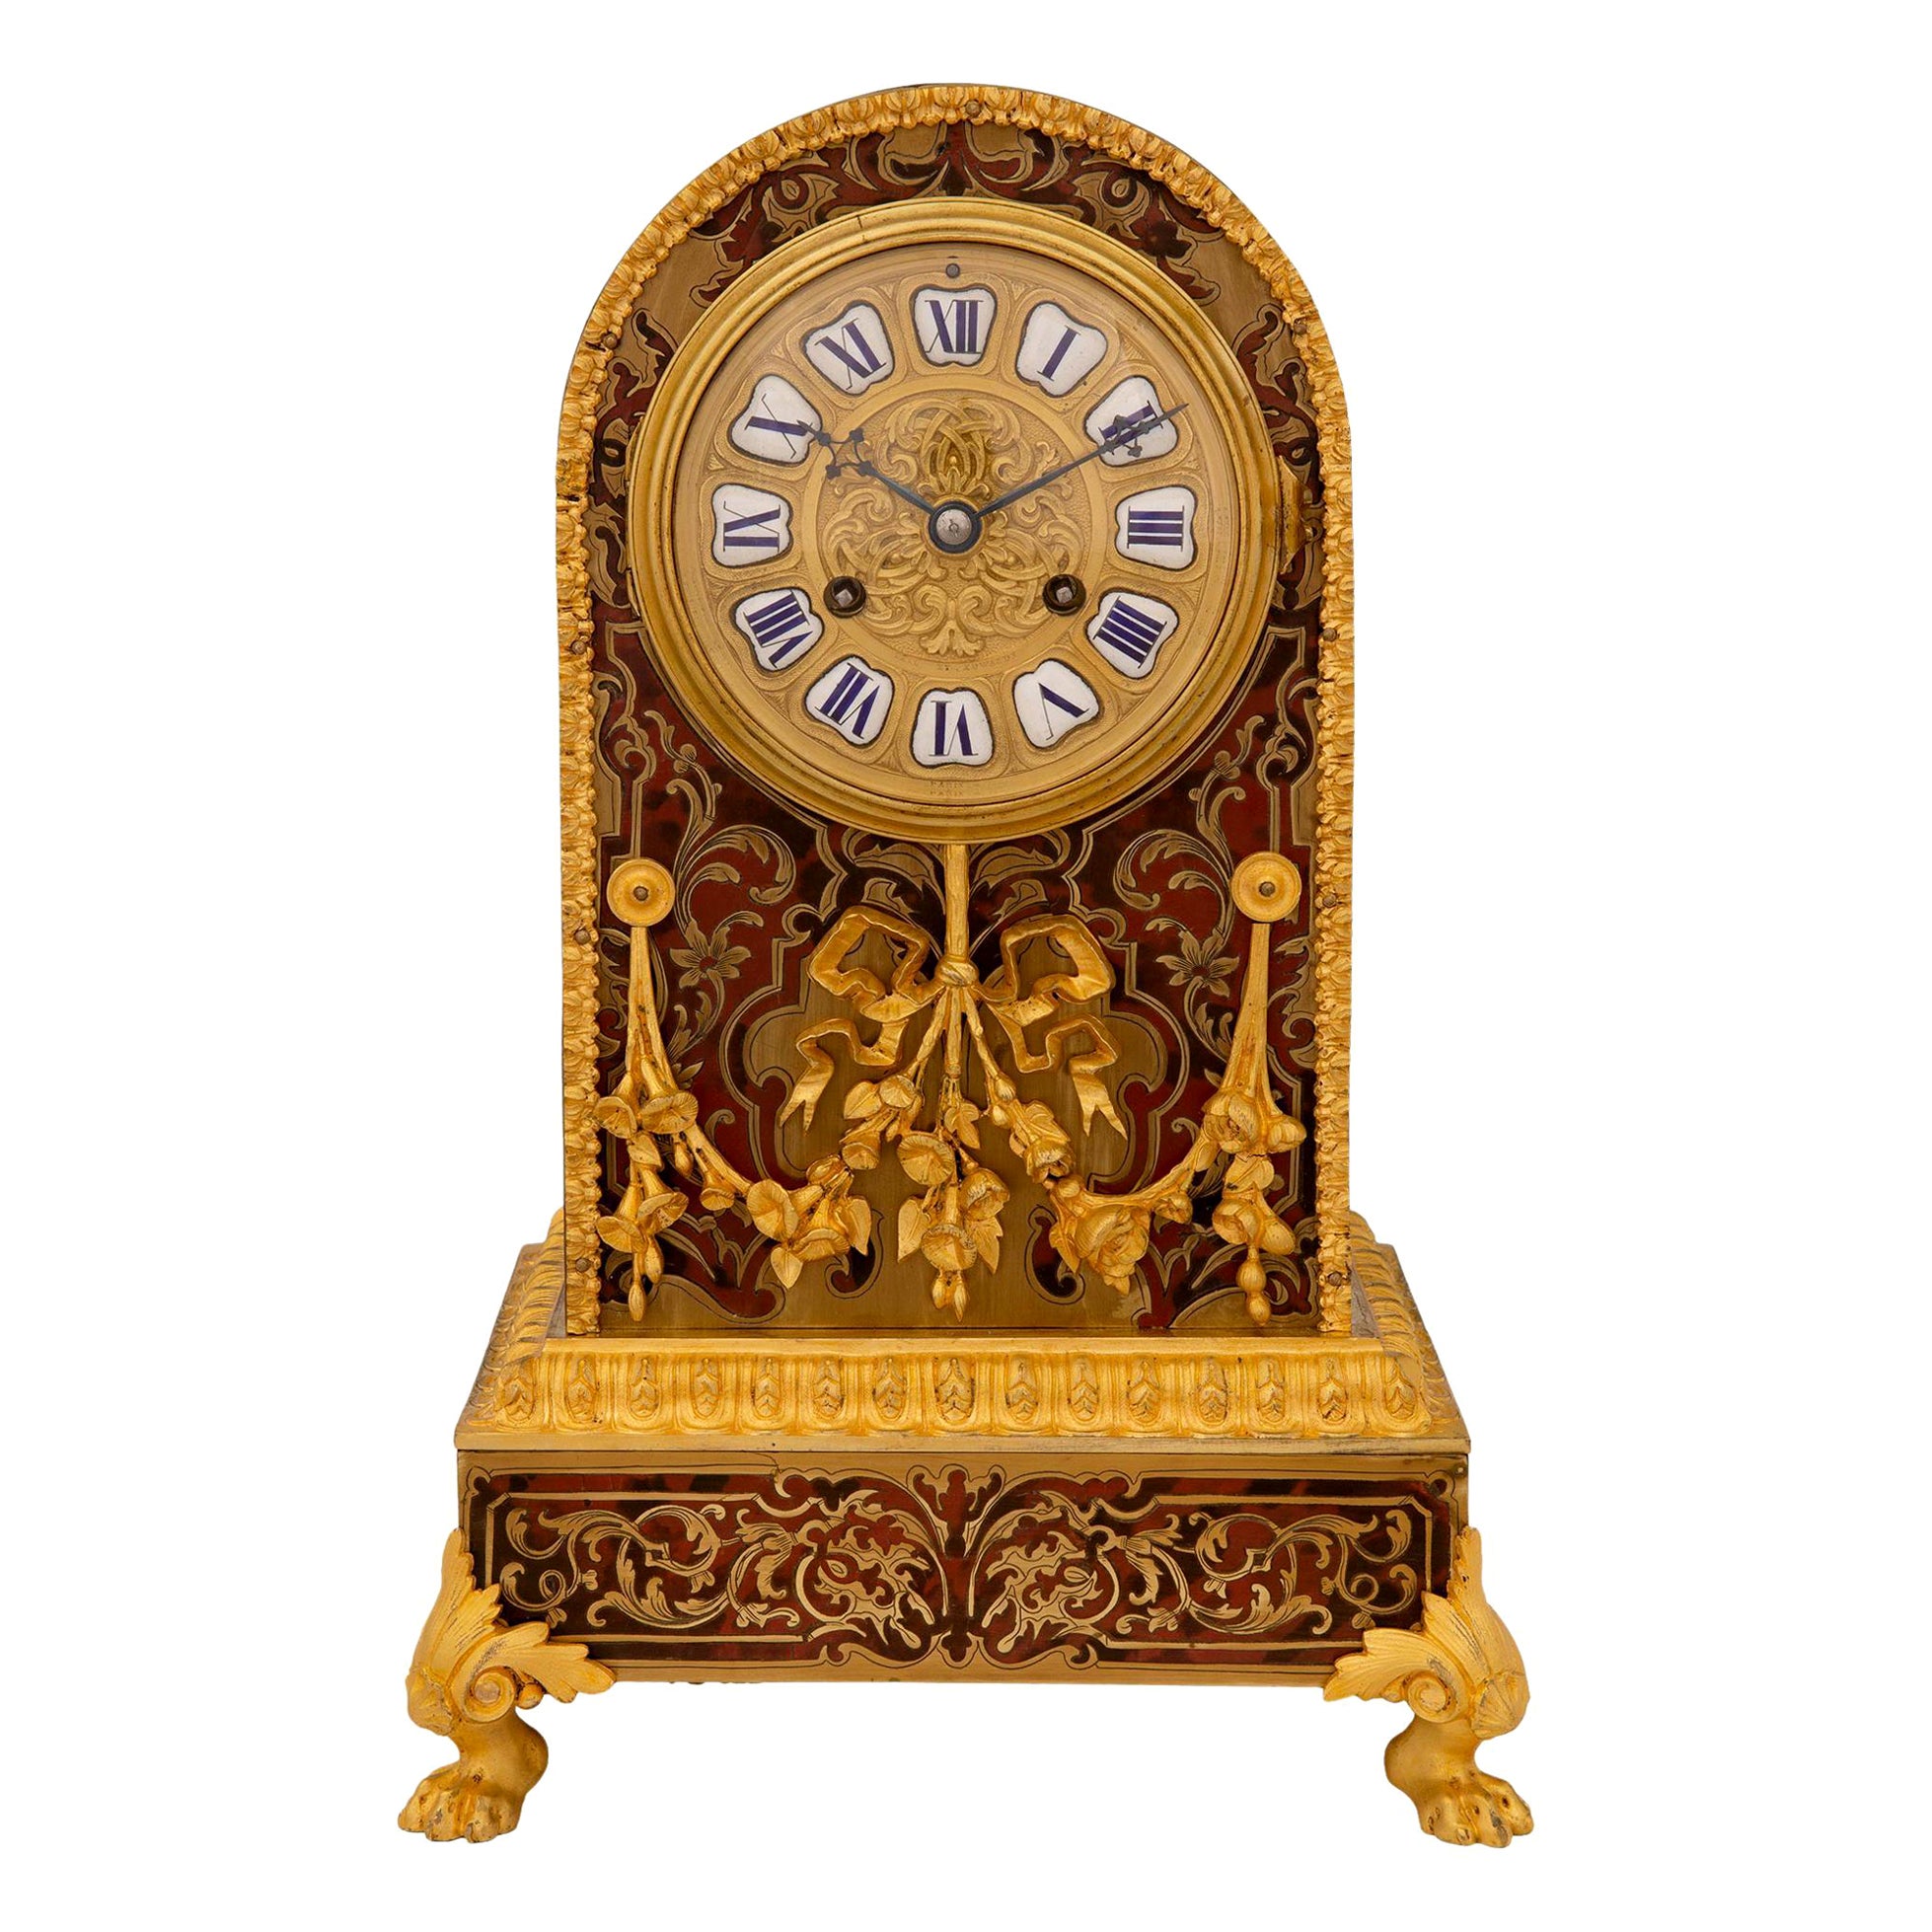 Französische Boulle-Uhr aus der Zeit Napoleons III. des 19. Jahrhunderts